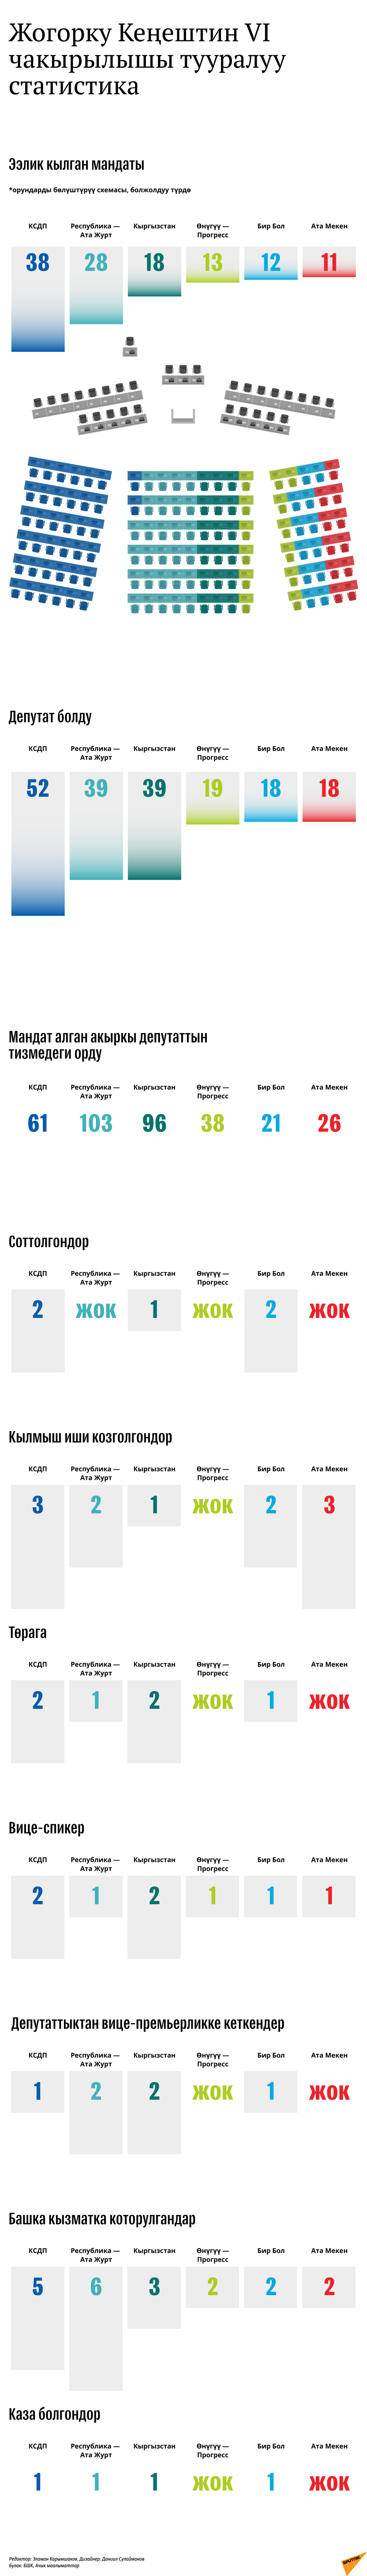 Жогорку Кеңештин VI чакырылышы тууралуу статистика  - Sputnik Кыргызстан, 1920, 14.04.2021